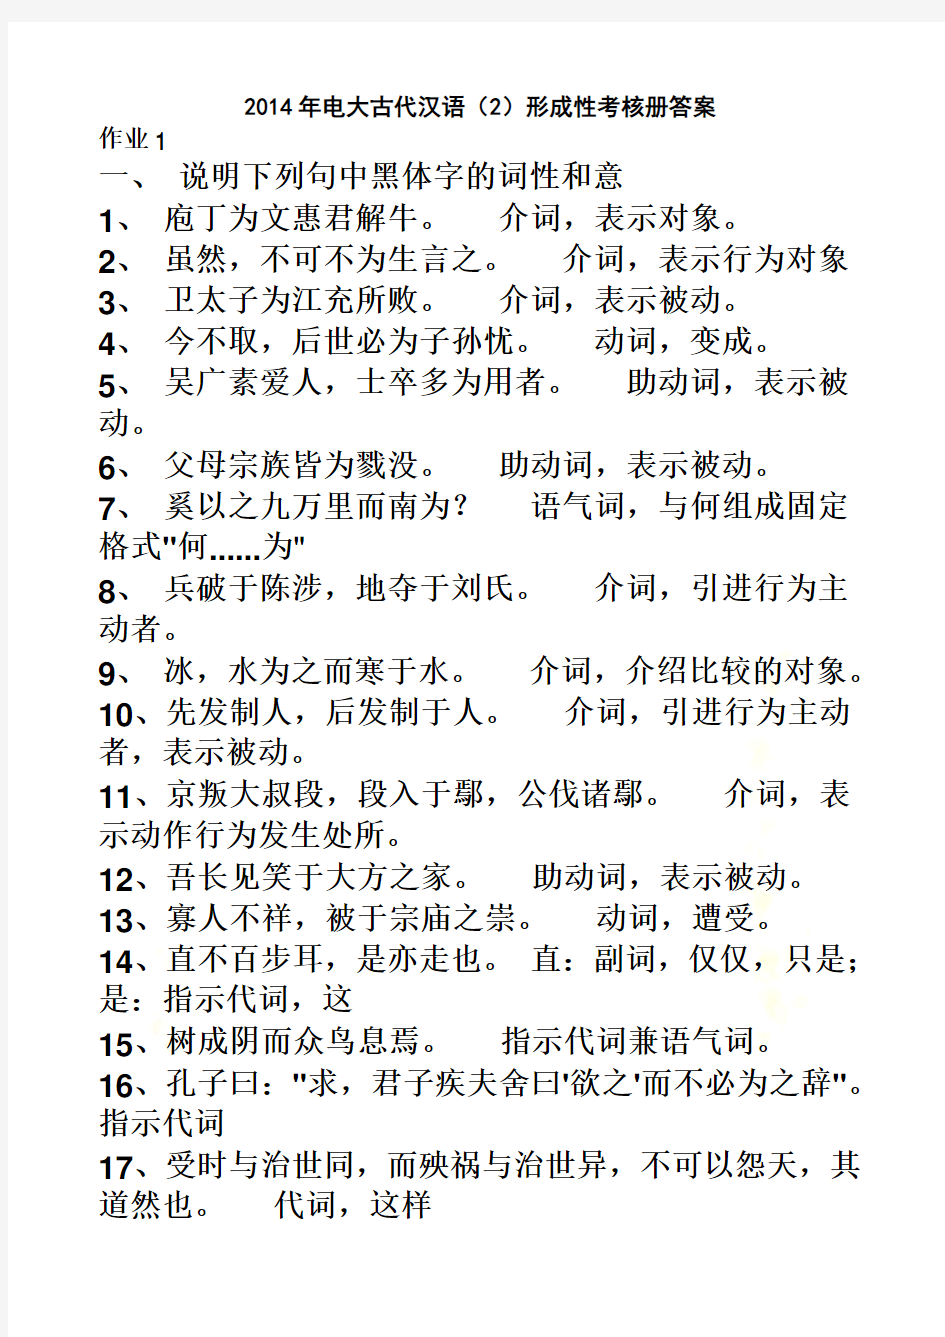 2014年电大汉语言文学专科古代汉语(2)形成性考核册答案(已整理)